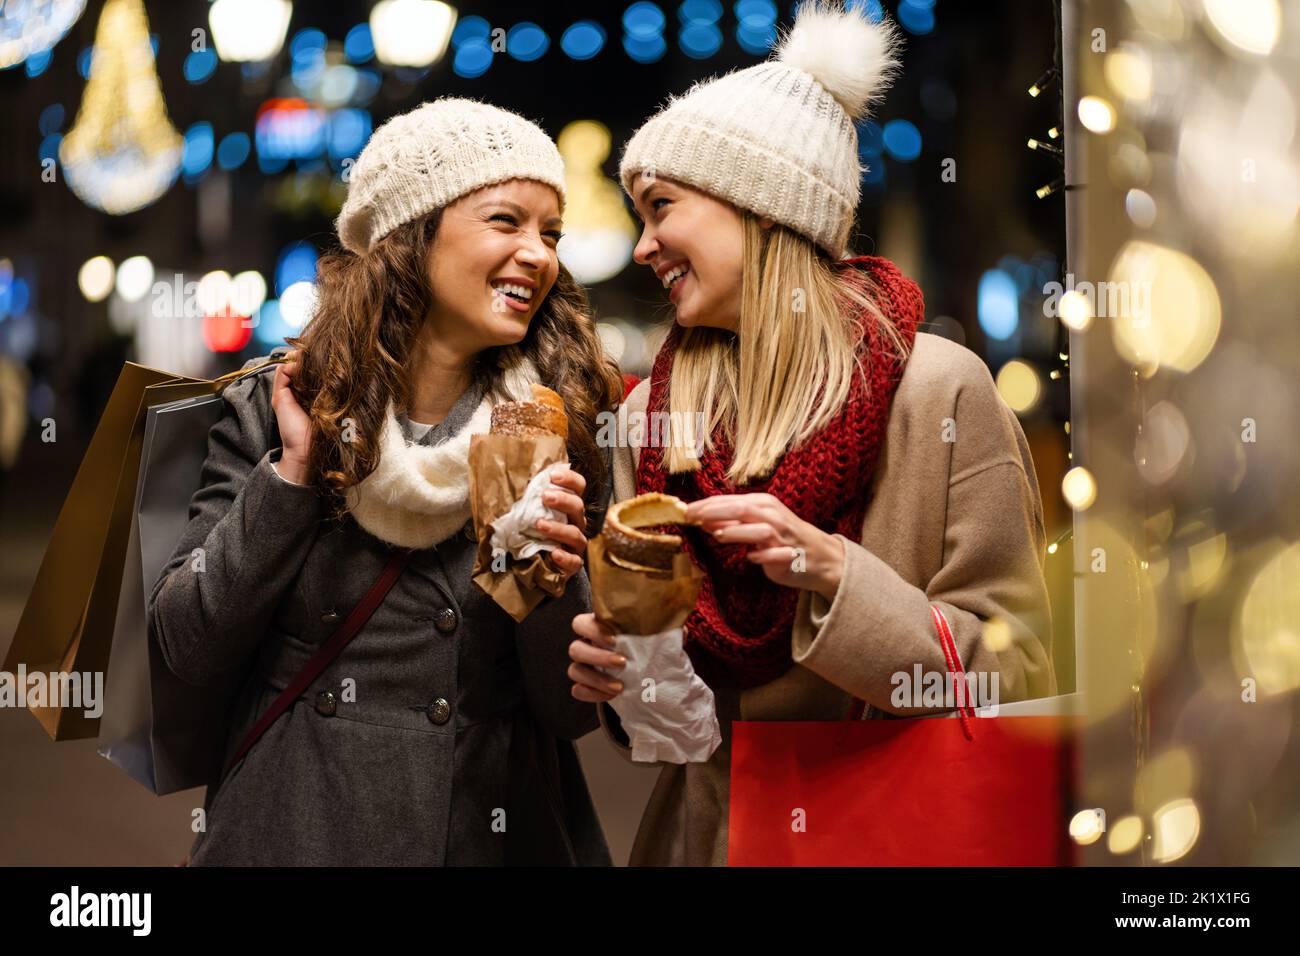 Porträt einer fröhlichen jungen glücklichen Frau beim Weihnachtseinkauf. Weihnachtseinkäufe Menschen Konzept Stockfoto